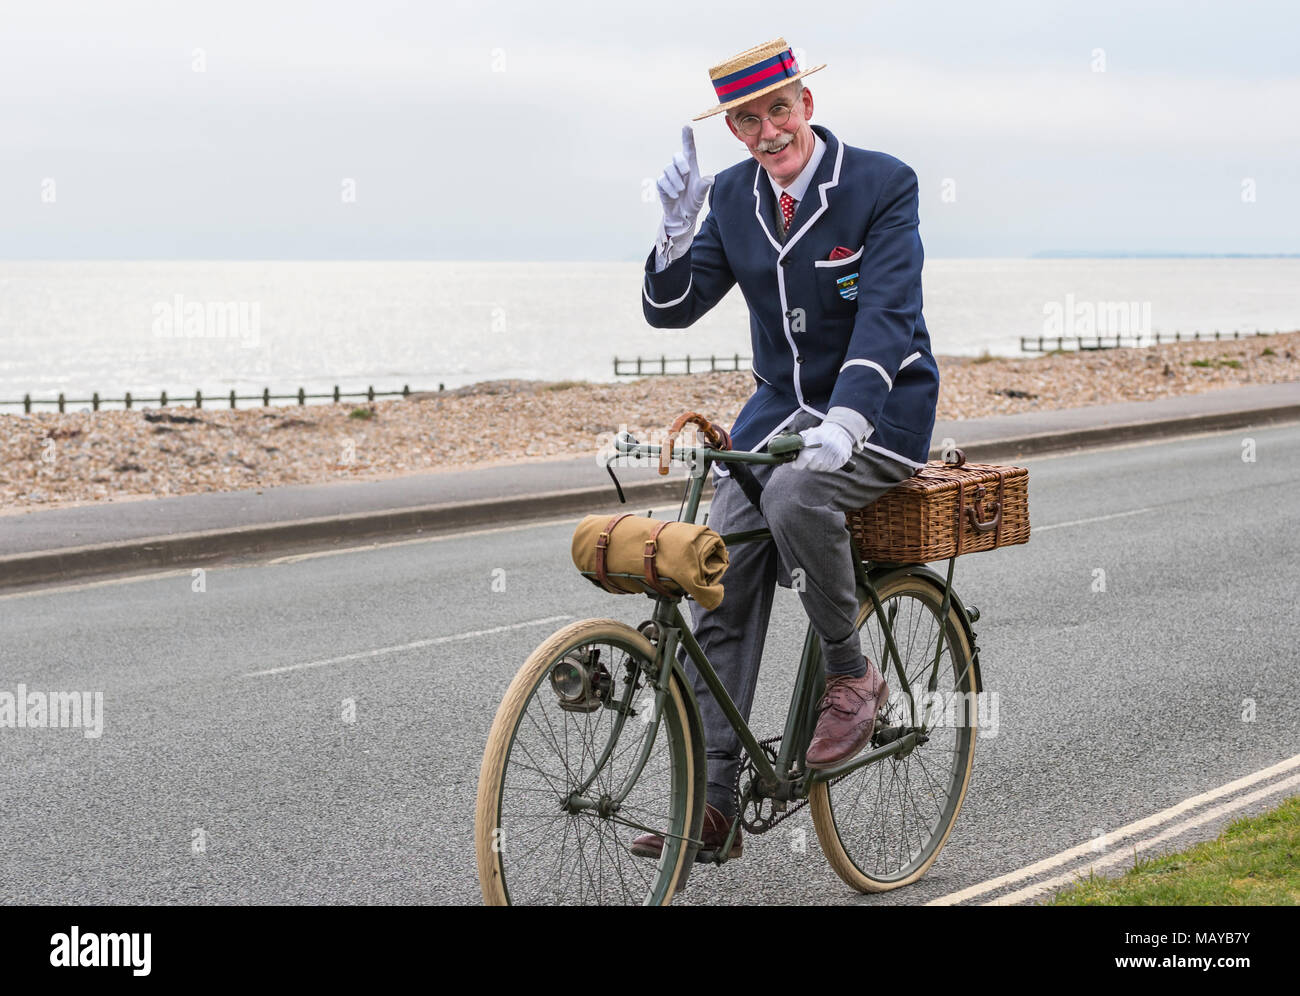 Un homme âgé à vélo sur un vélo victorien habillé en costume portant un chapeau en paille et blazer hat, au Royaume-Uni. Monsieur tipping hat. Banque D'Images